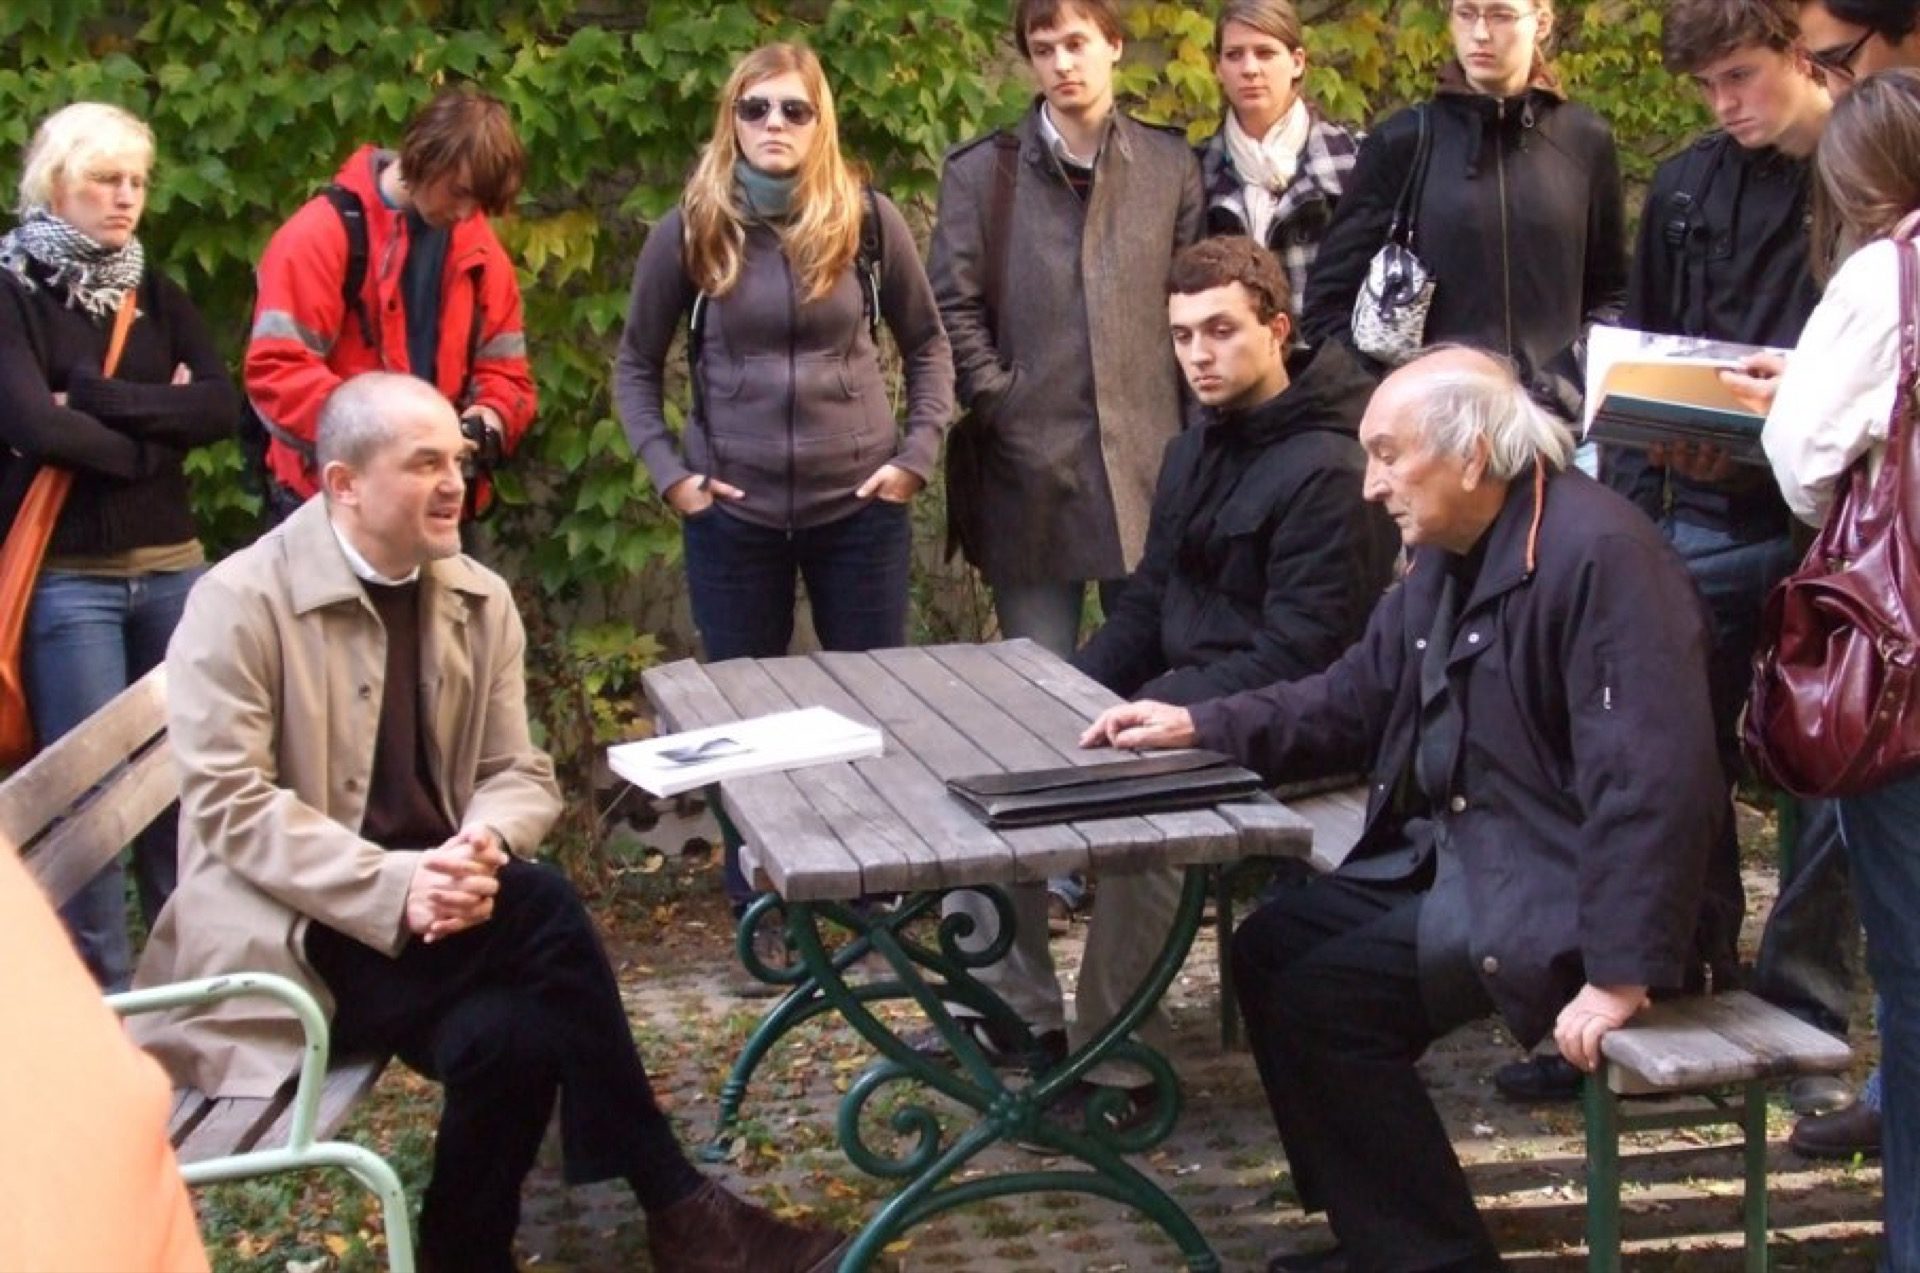 Der stille Radikale – s profesorem Antonem Schweighoferem po jeho radikálně řešeném domově studentů